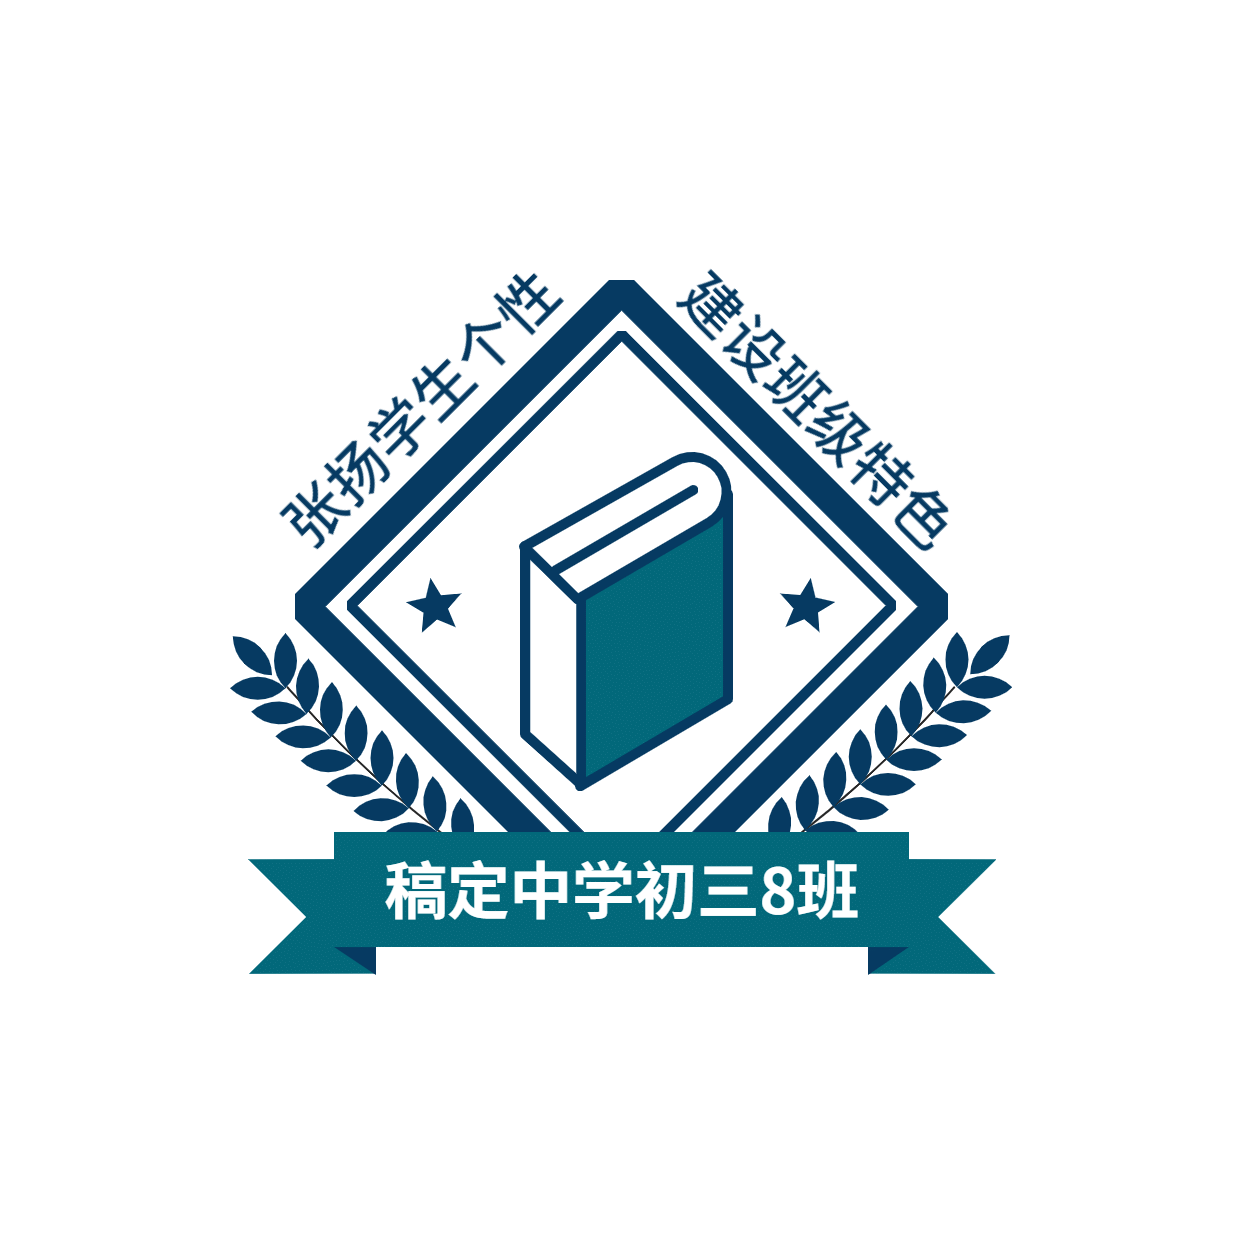 教育班级班徽校徽头像logo